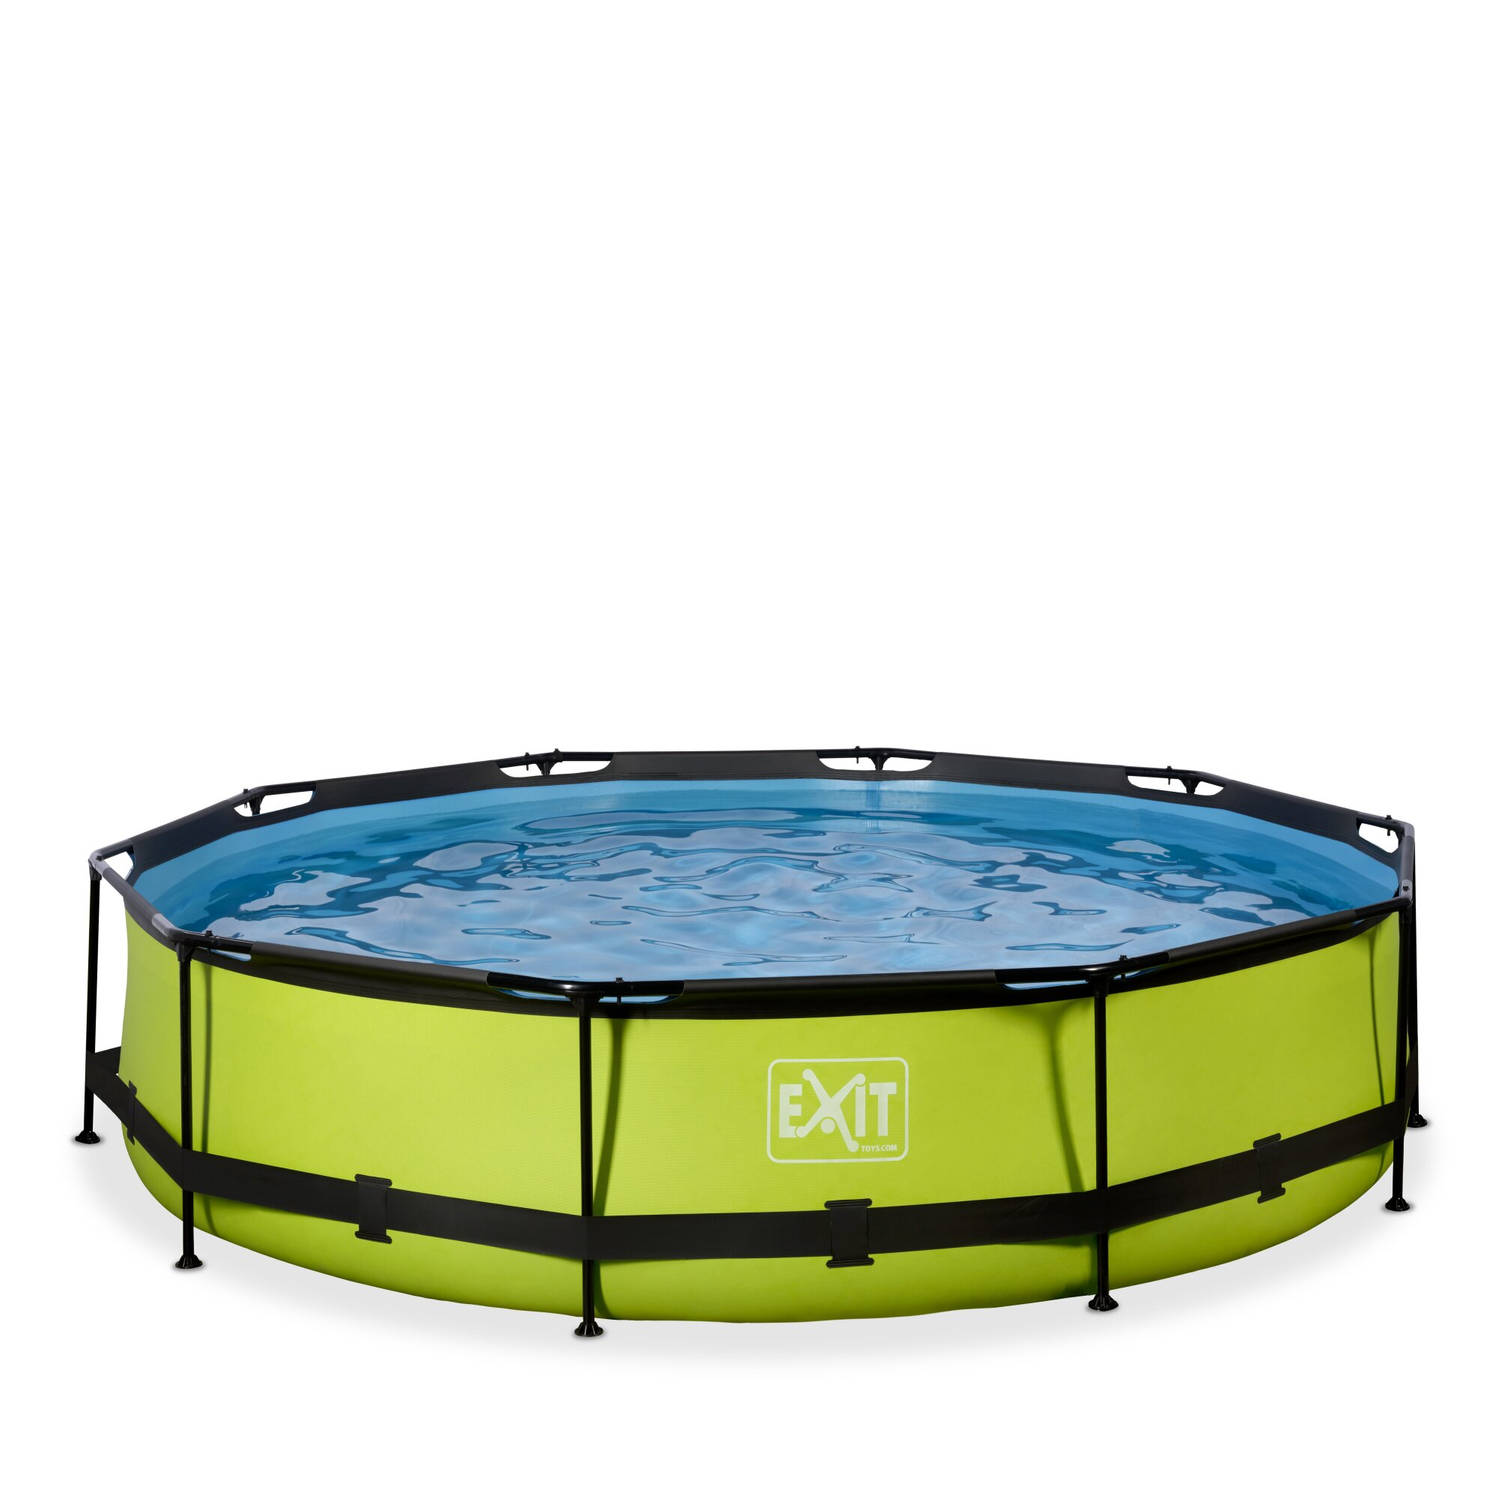 EXIT Lime opzetzwembad met filterpomp groen ø360x76cm